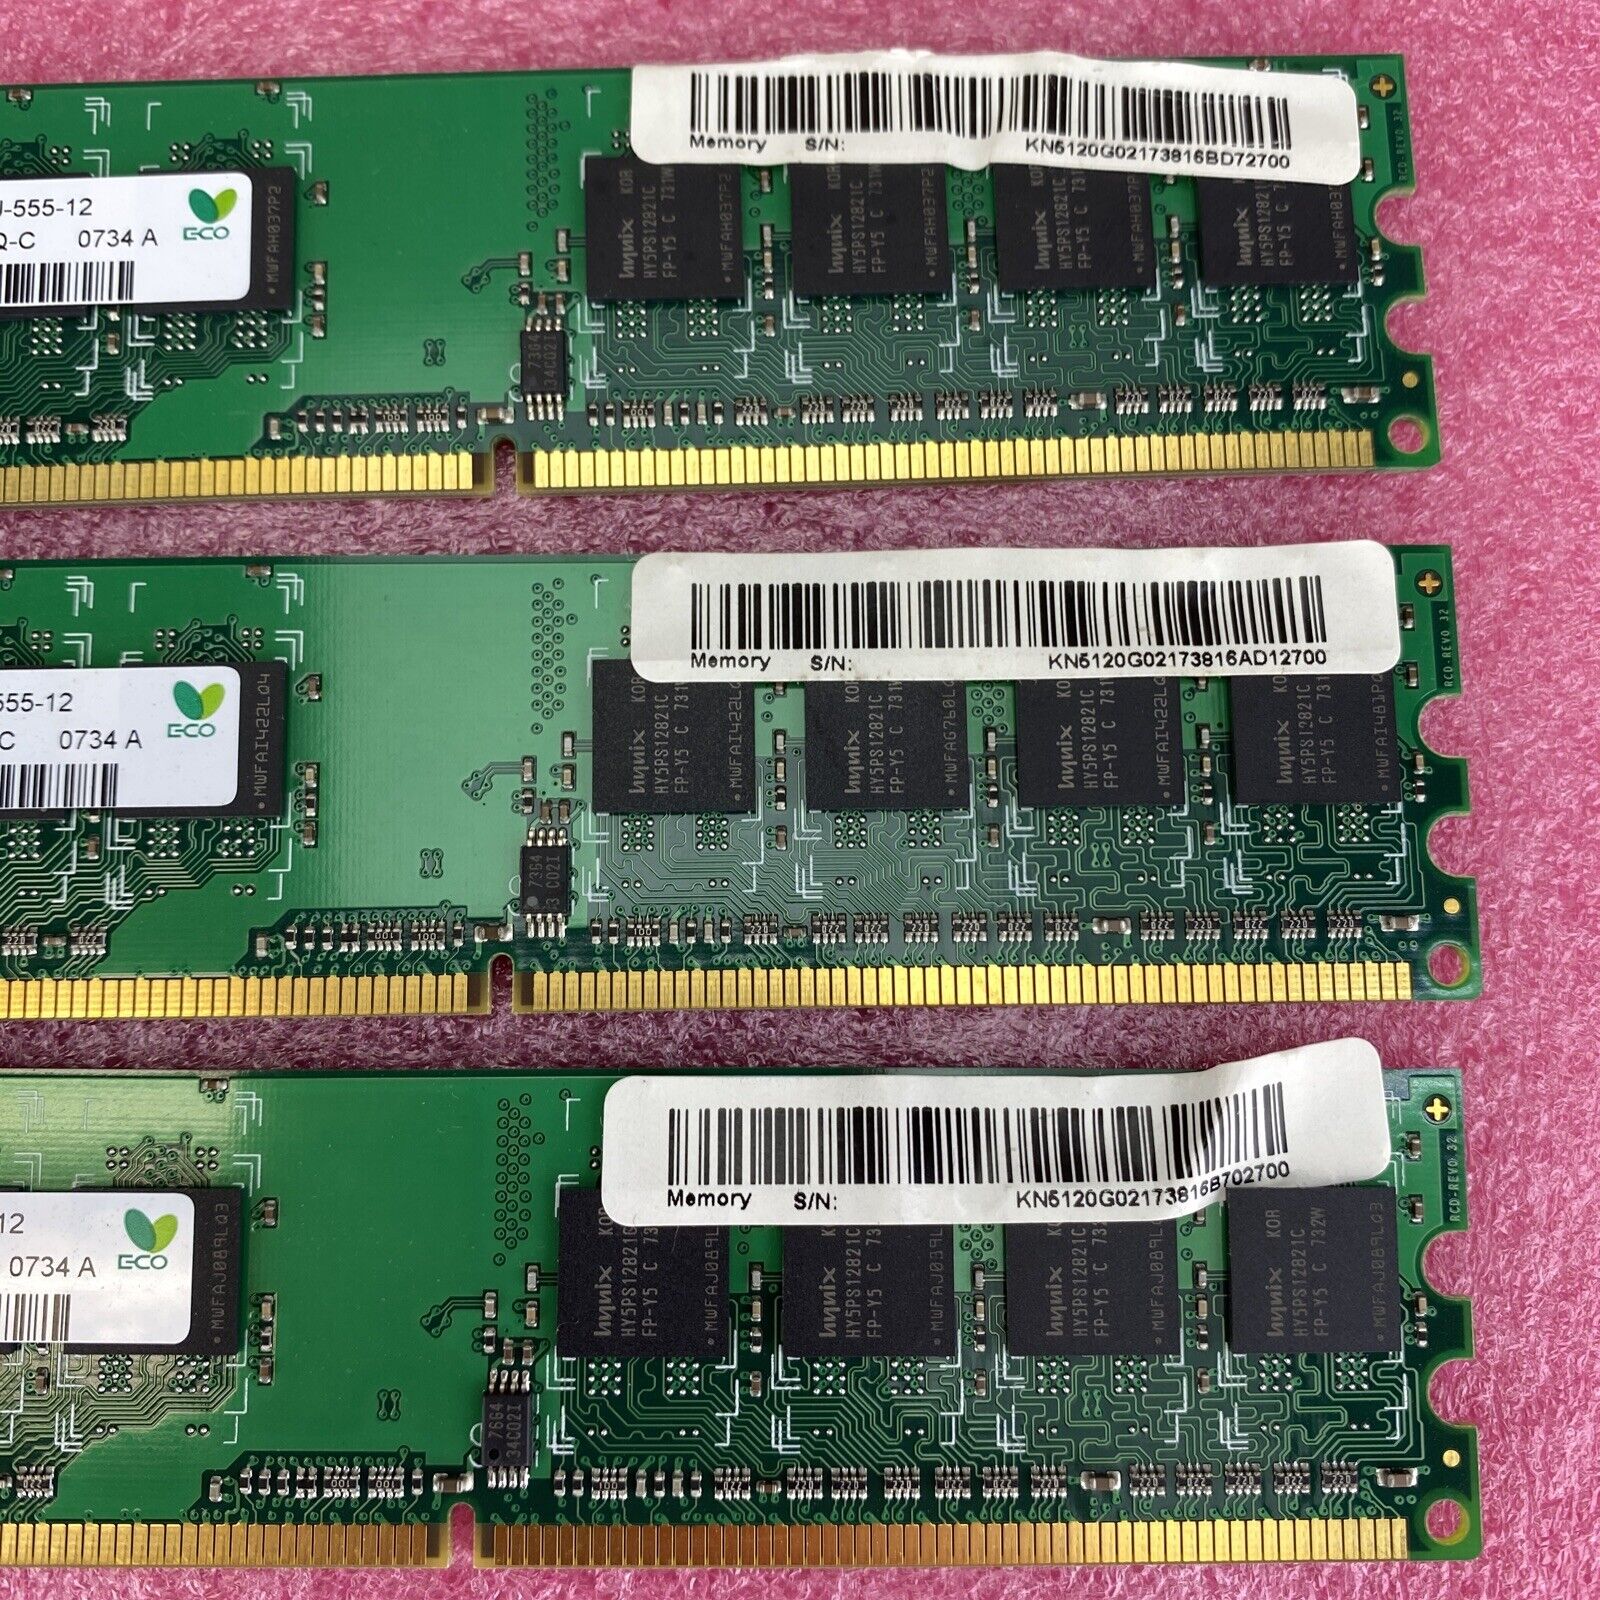 3x 512MB Hynix HYMP564U64CP8-Y5 PQ-C PC2-5300U 667MHz DDR2 1Rx8 memory RAM